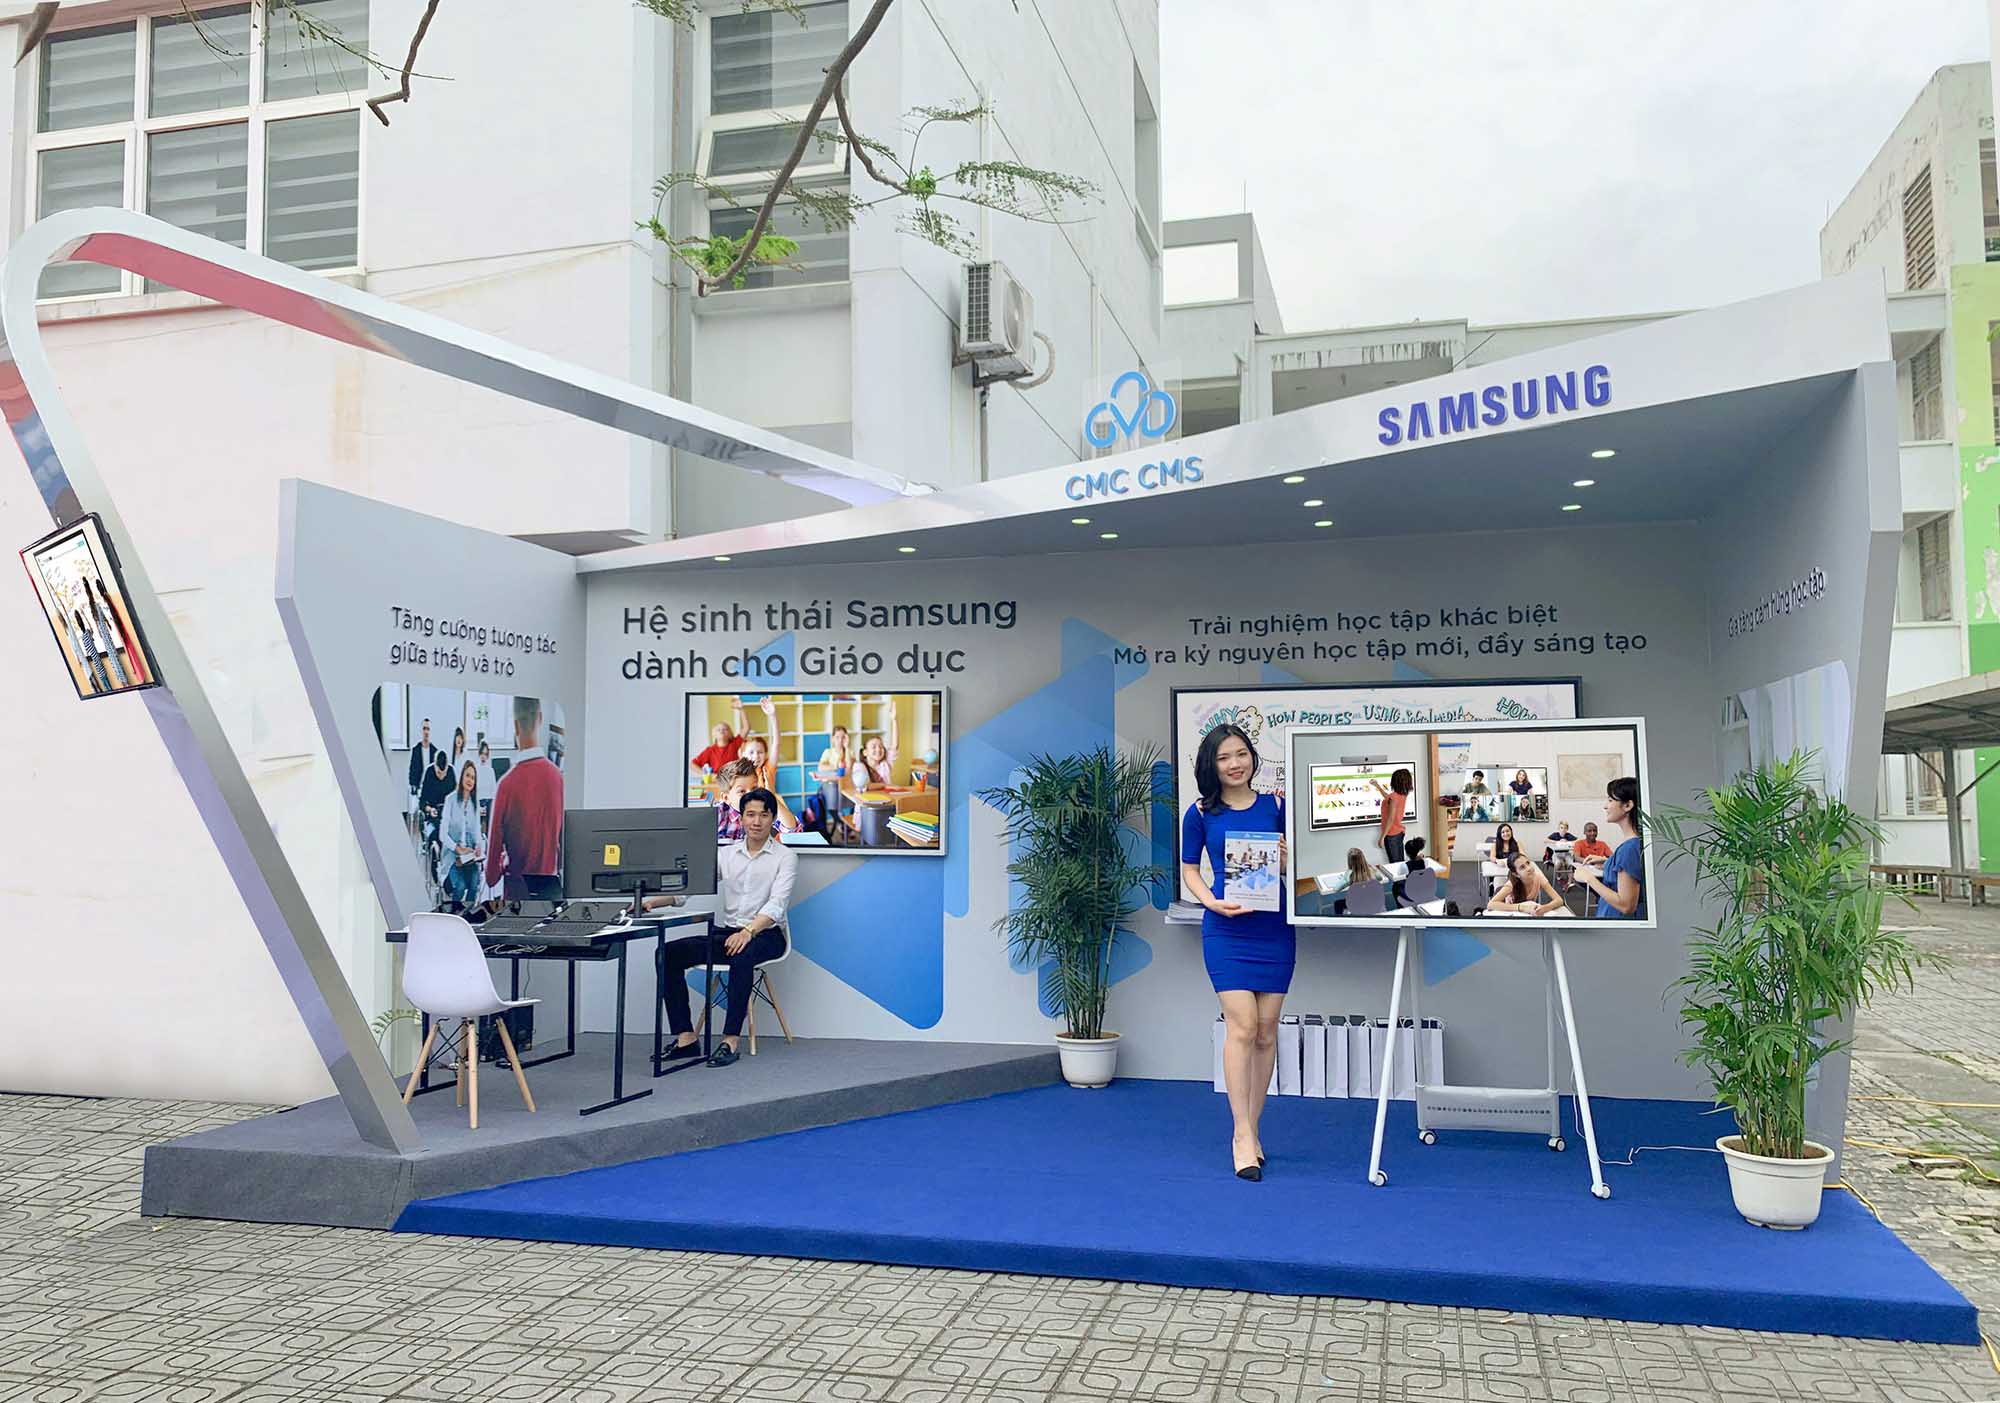 Samsung ứng dụng nhiều giải pháp giáo dục số hóa tại Việt Nam